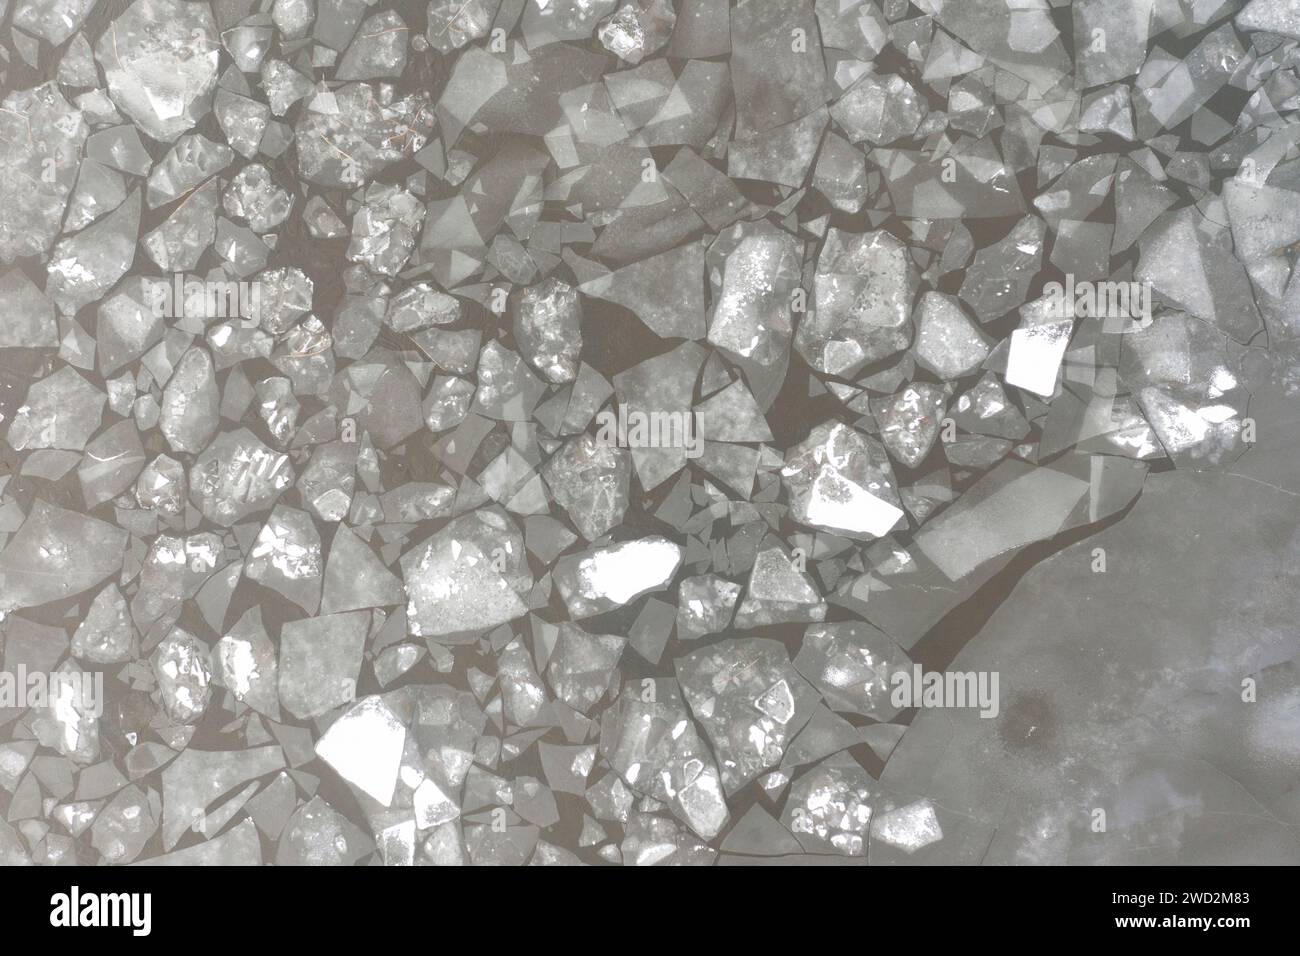 La texture d'un lac gelé et des morceaux de glace flottants dans l'eau. Paysage hivernal d'un drone. Banque D'Images